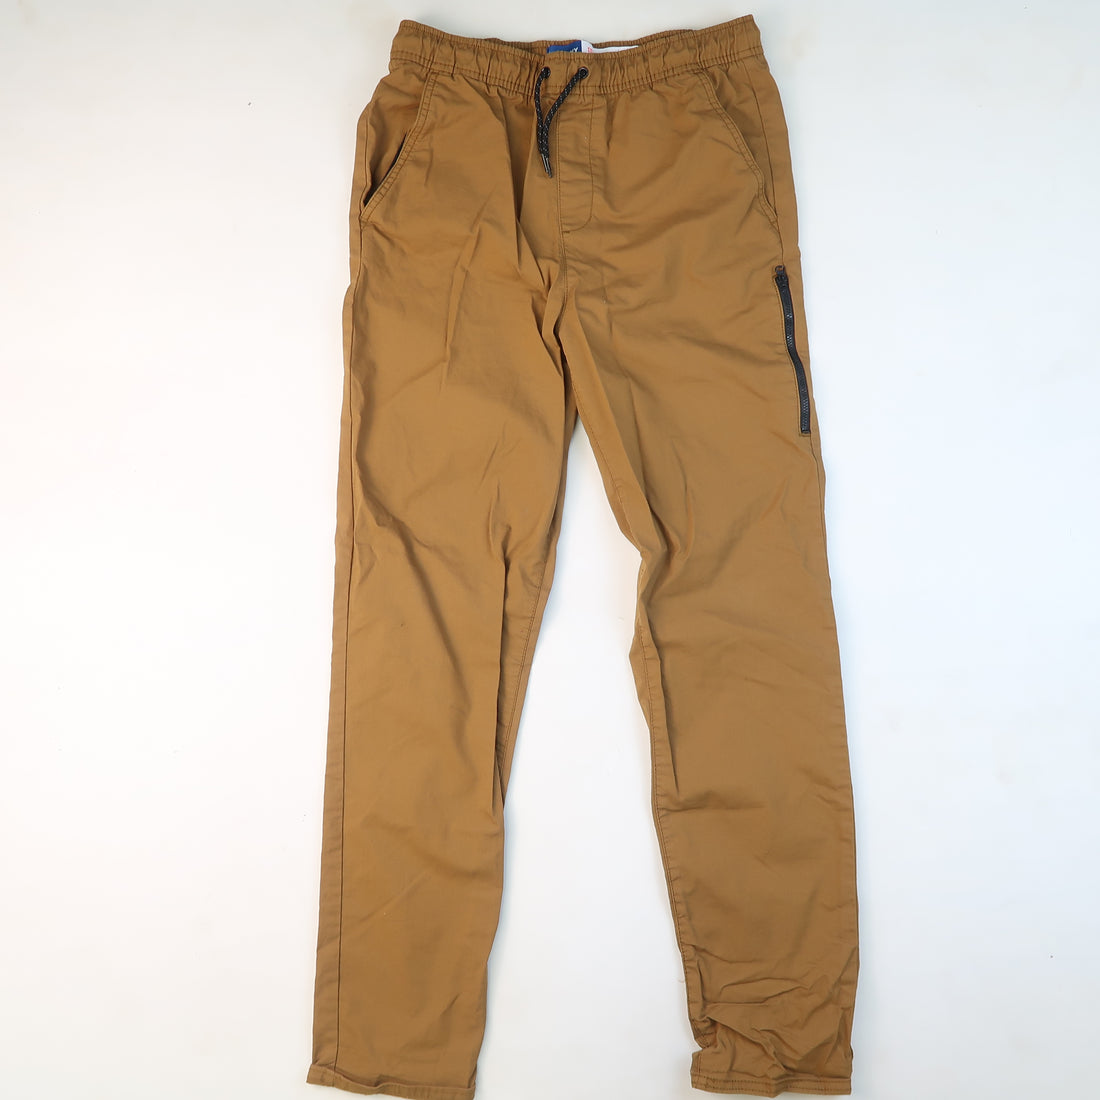 Old Navy - Pants (18Y)